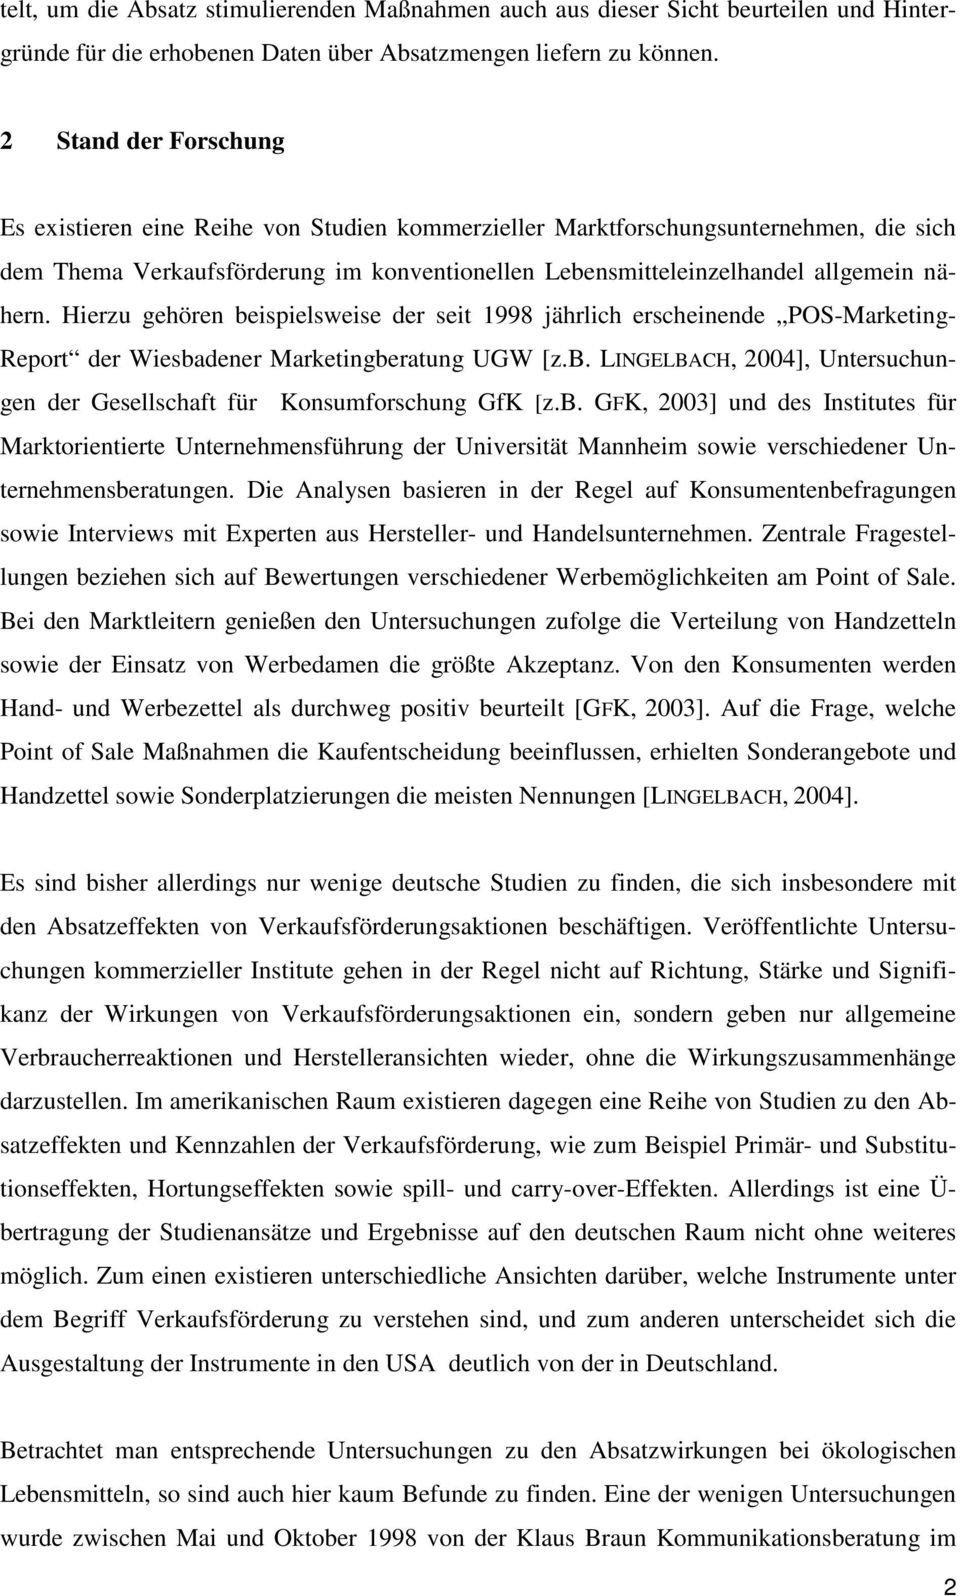 Hierzu gehören beispielsweise der seit 1998 jährlich erscheinende POS-Marketing- Report der Wiesbadener Marketingberatung UGW [z.b. LINGELBACH, 2004], Untersuchungen der Gesellschaft für Konsumforschung GfK [z.